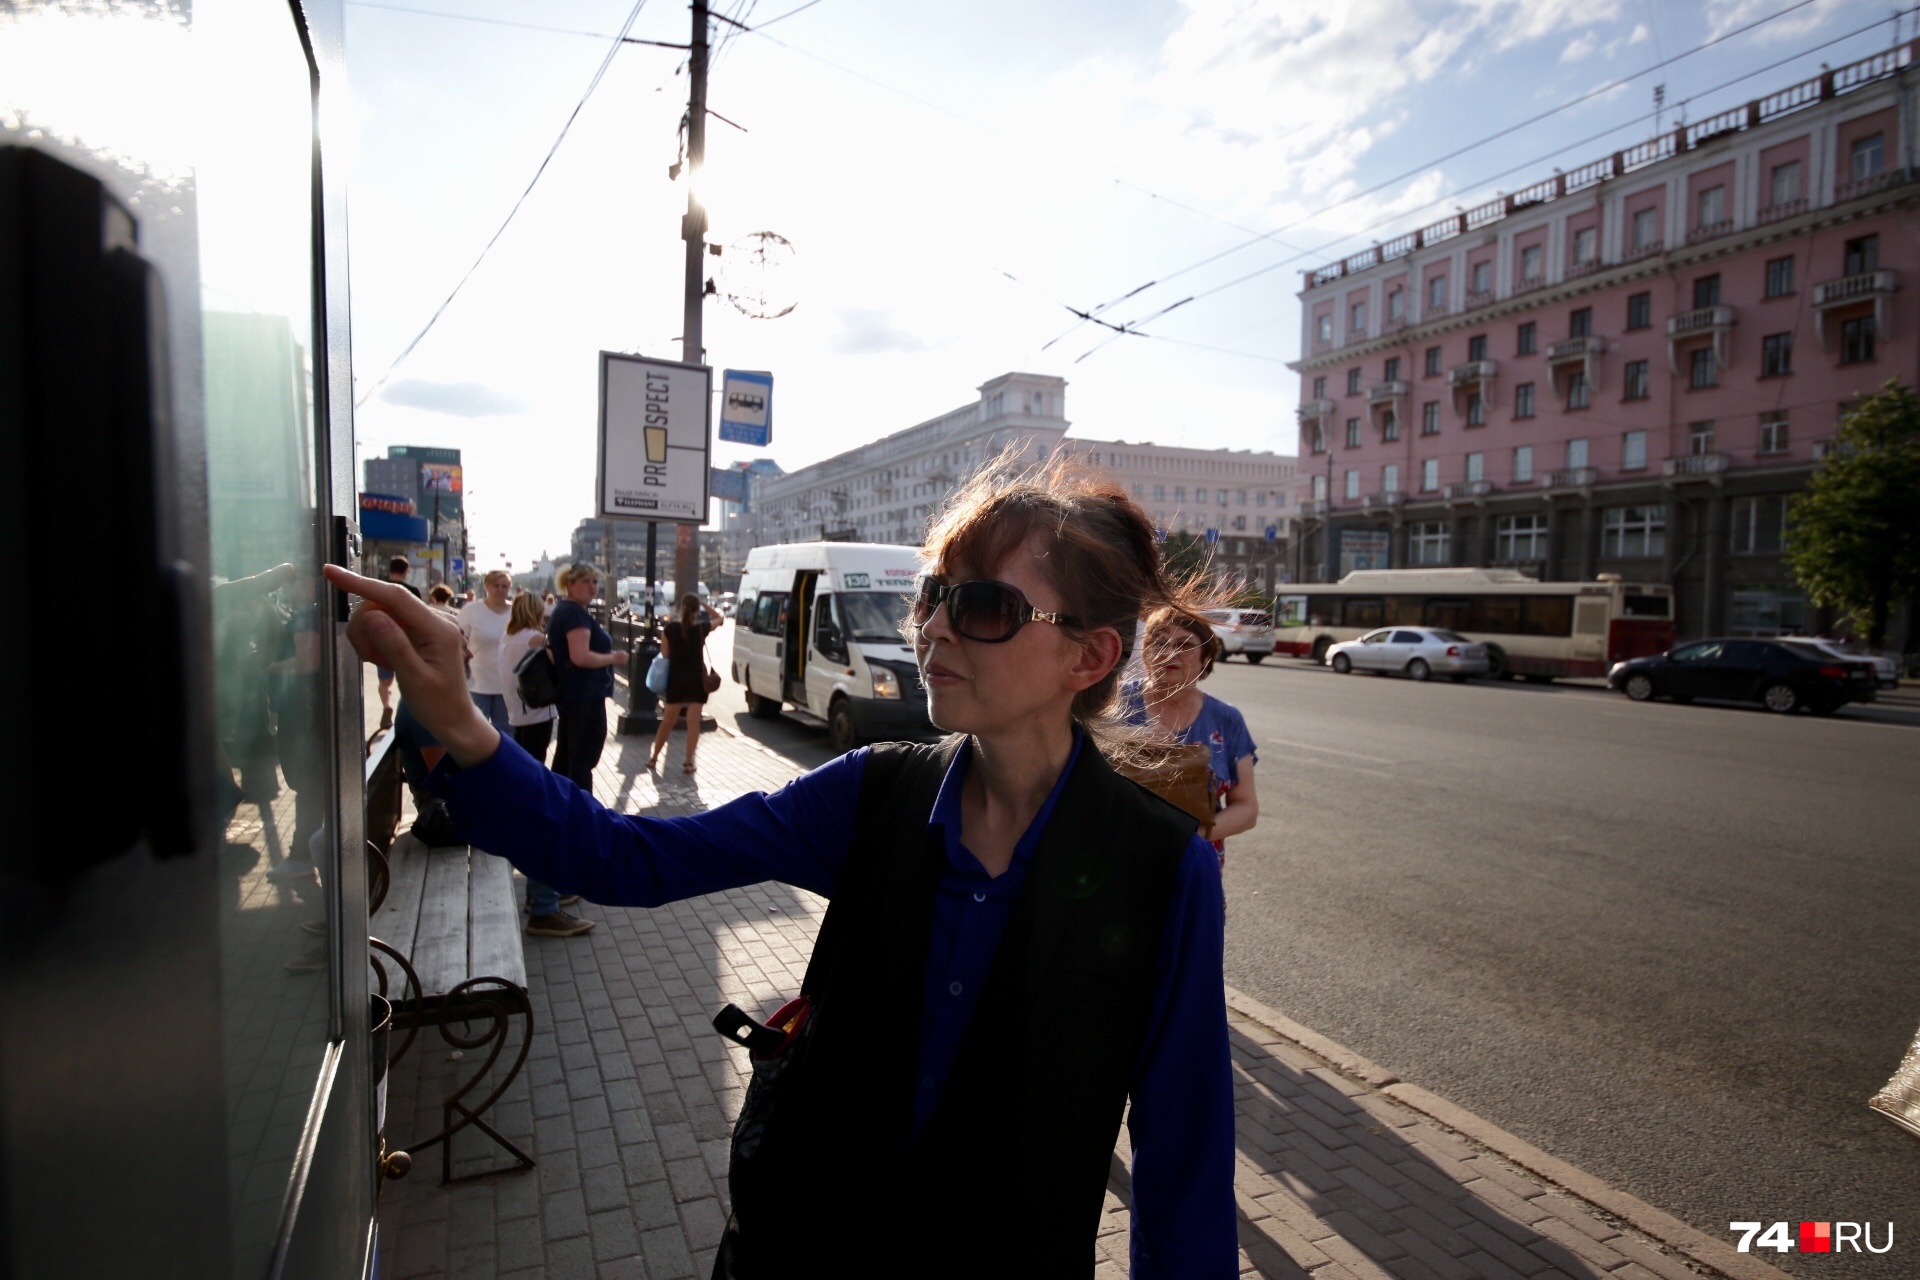 «Где транспорт?»: тестируем «умную» остановку на площади Революции Челябинска